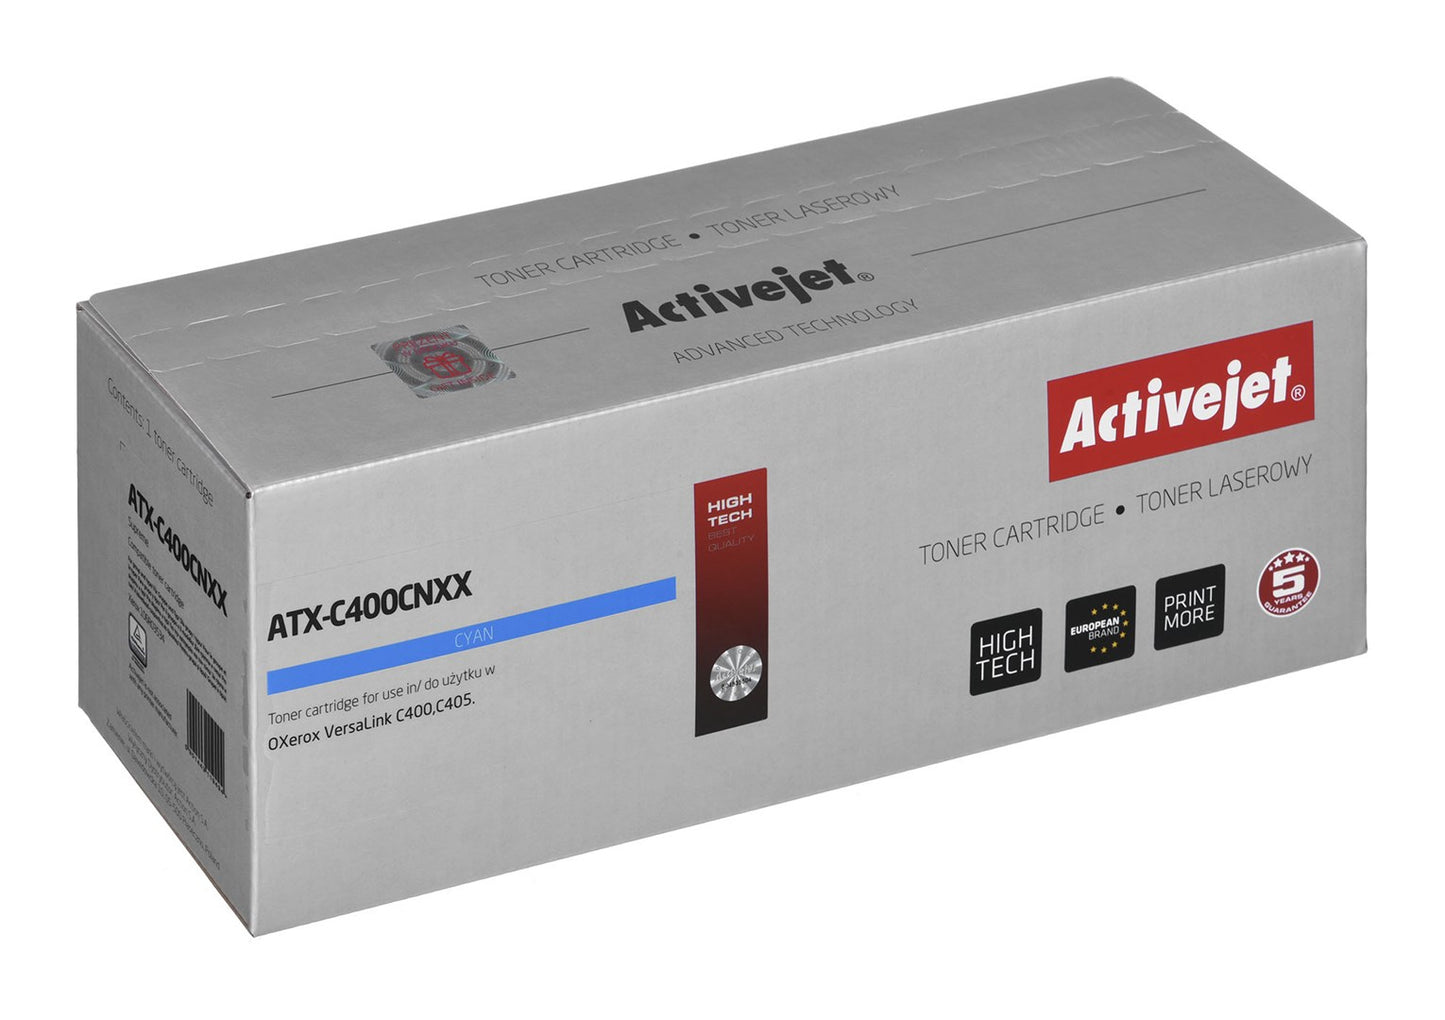 Activejet ATX-C400CNXX väriaine (korvaava Xerox 106R03534, Supreme, 8000 sivua, sininen)